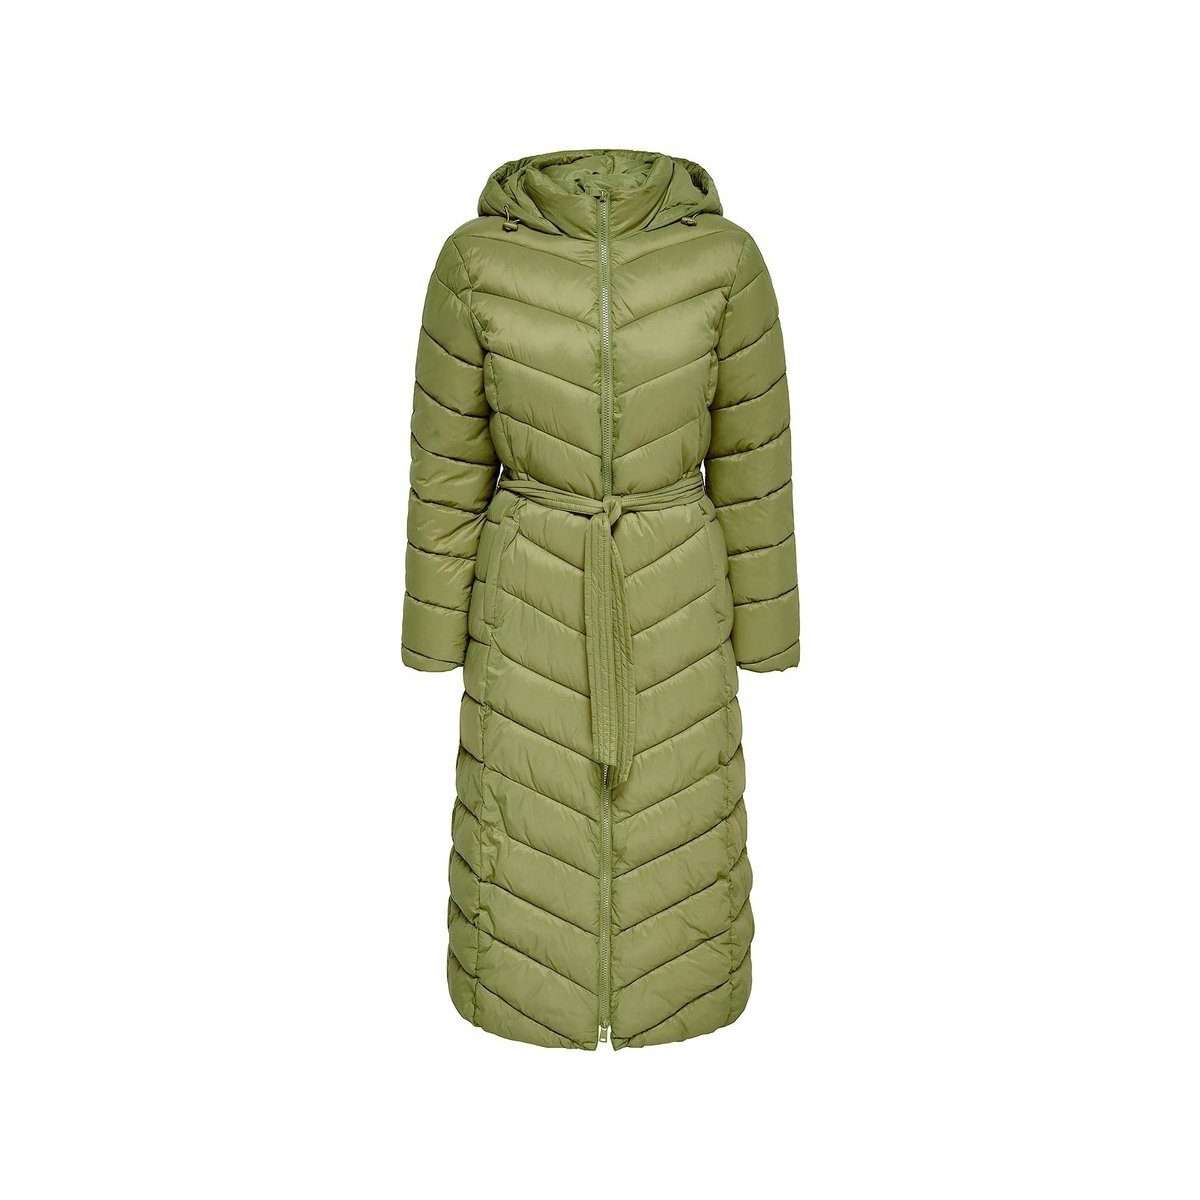 Длинное пальто зеленого цвета стандартного кроя (1 шт.)